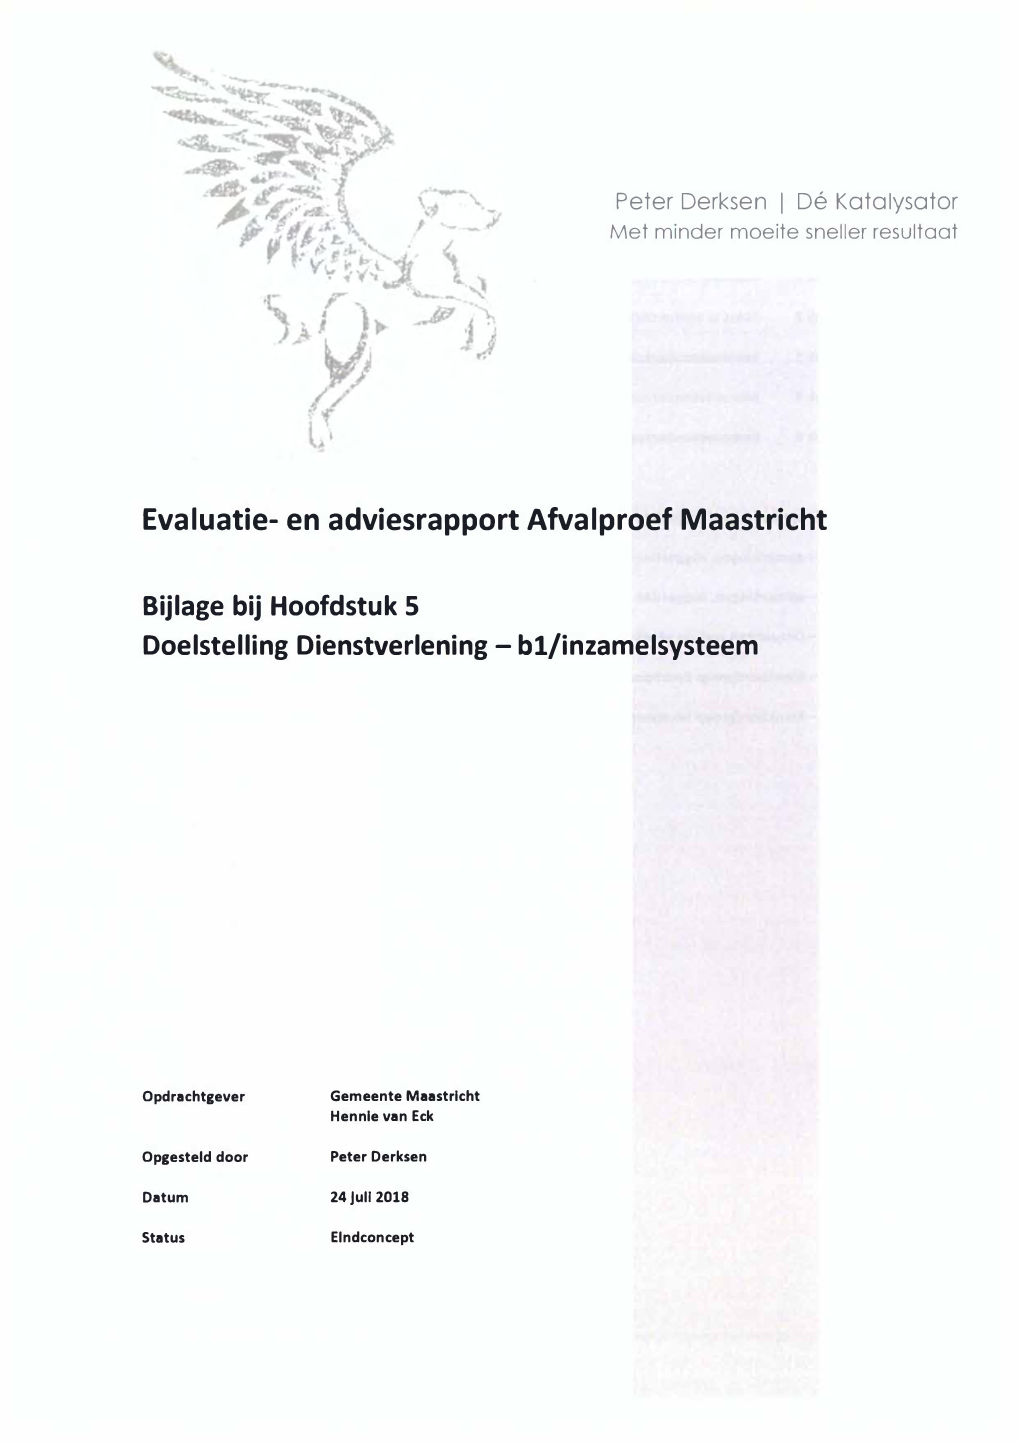 Evaluatie- En Adviesrapport Afvalproef Maastricht